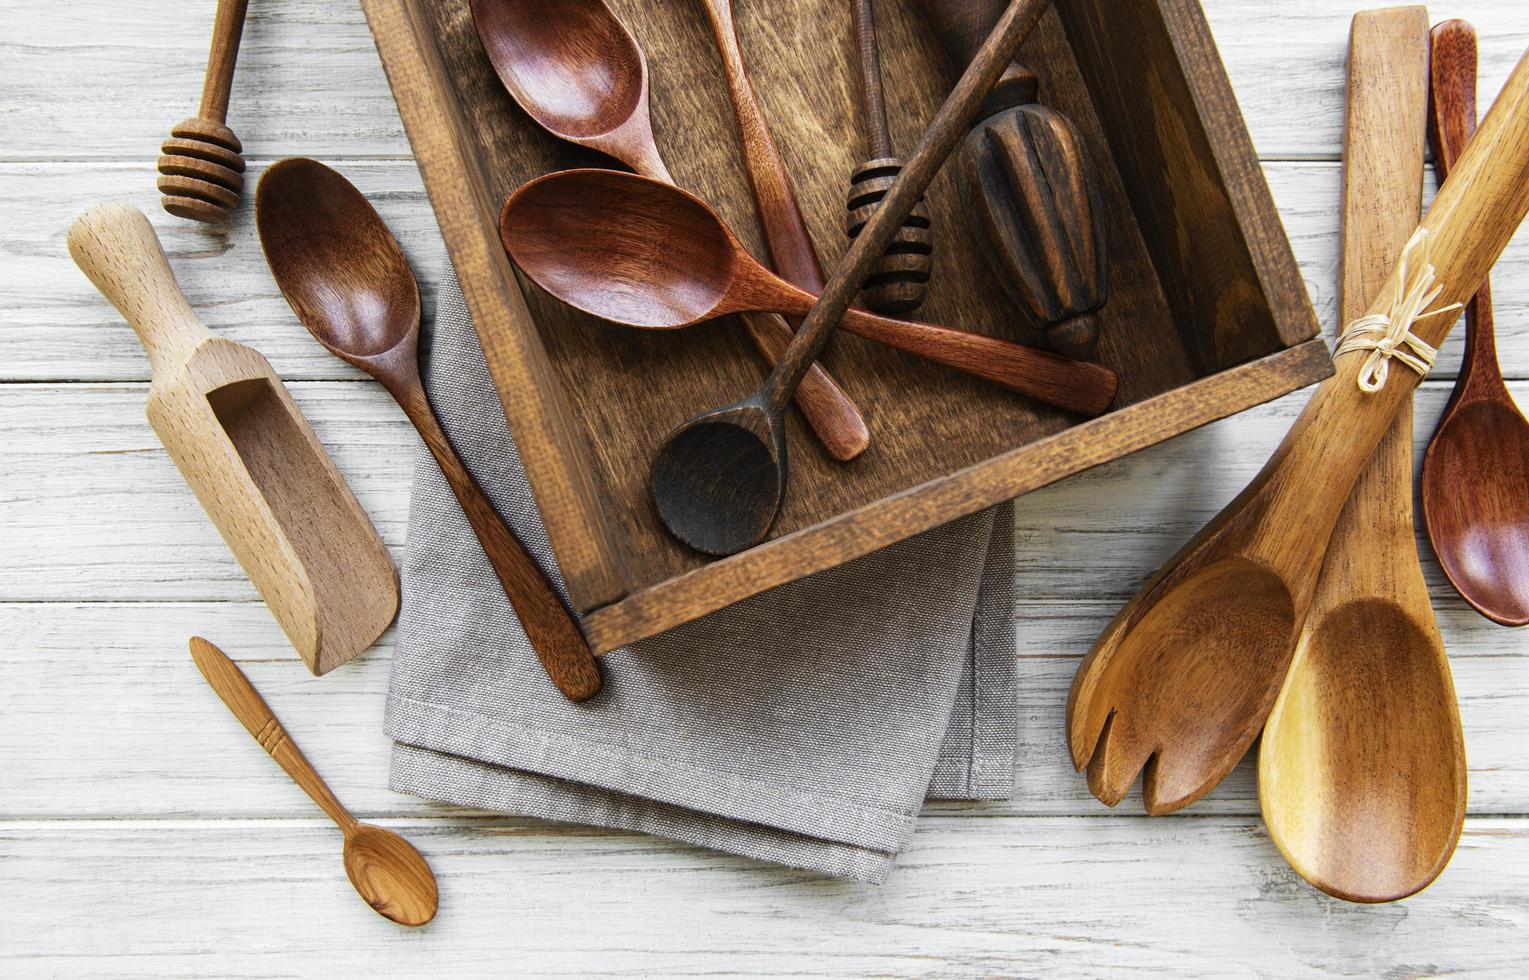 cubiertos de madera utensilios de cocina foto